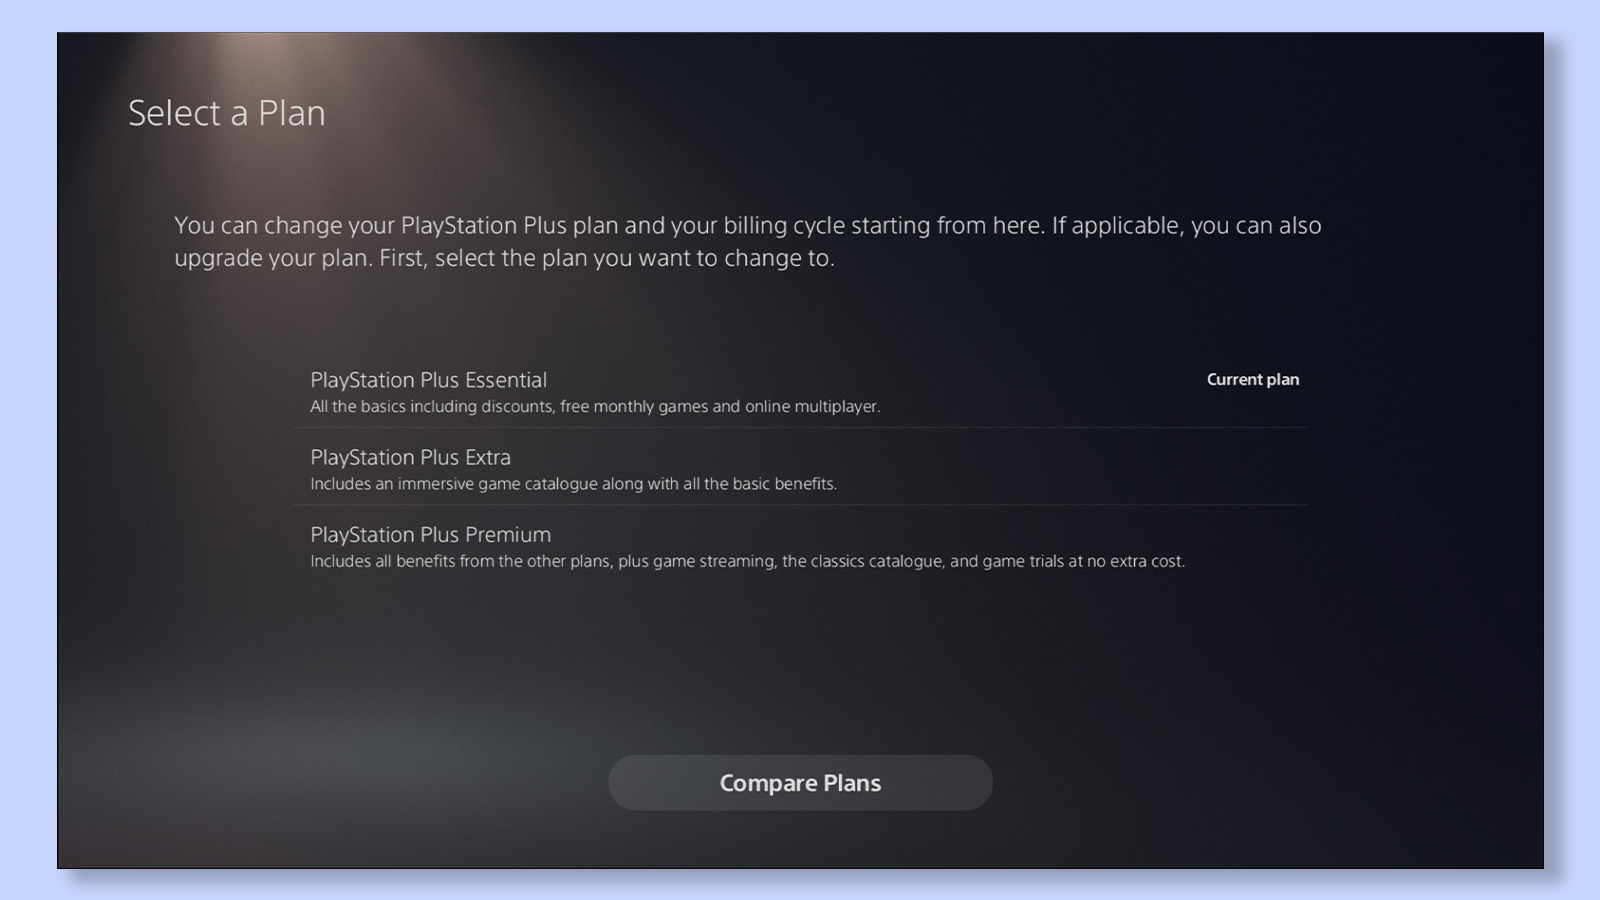 Шестой и последний шаг для изменения Playstation Plus, экран сравнения планов